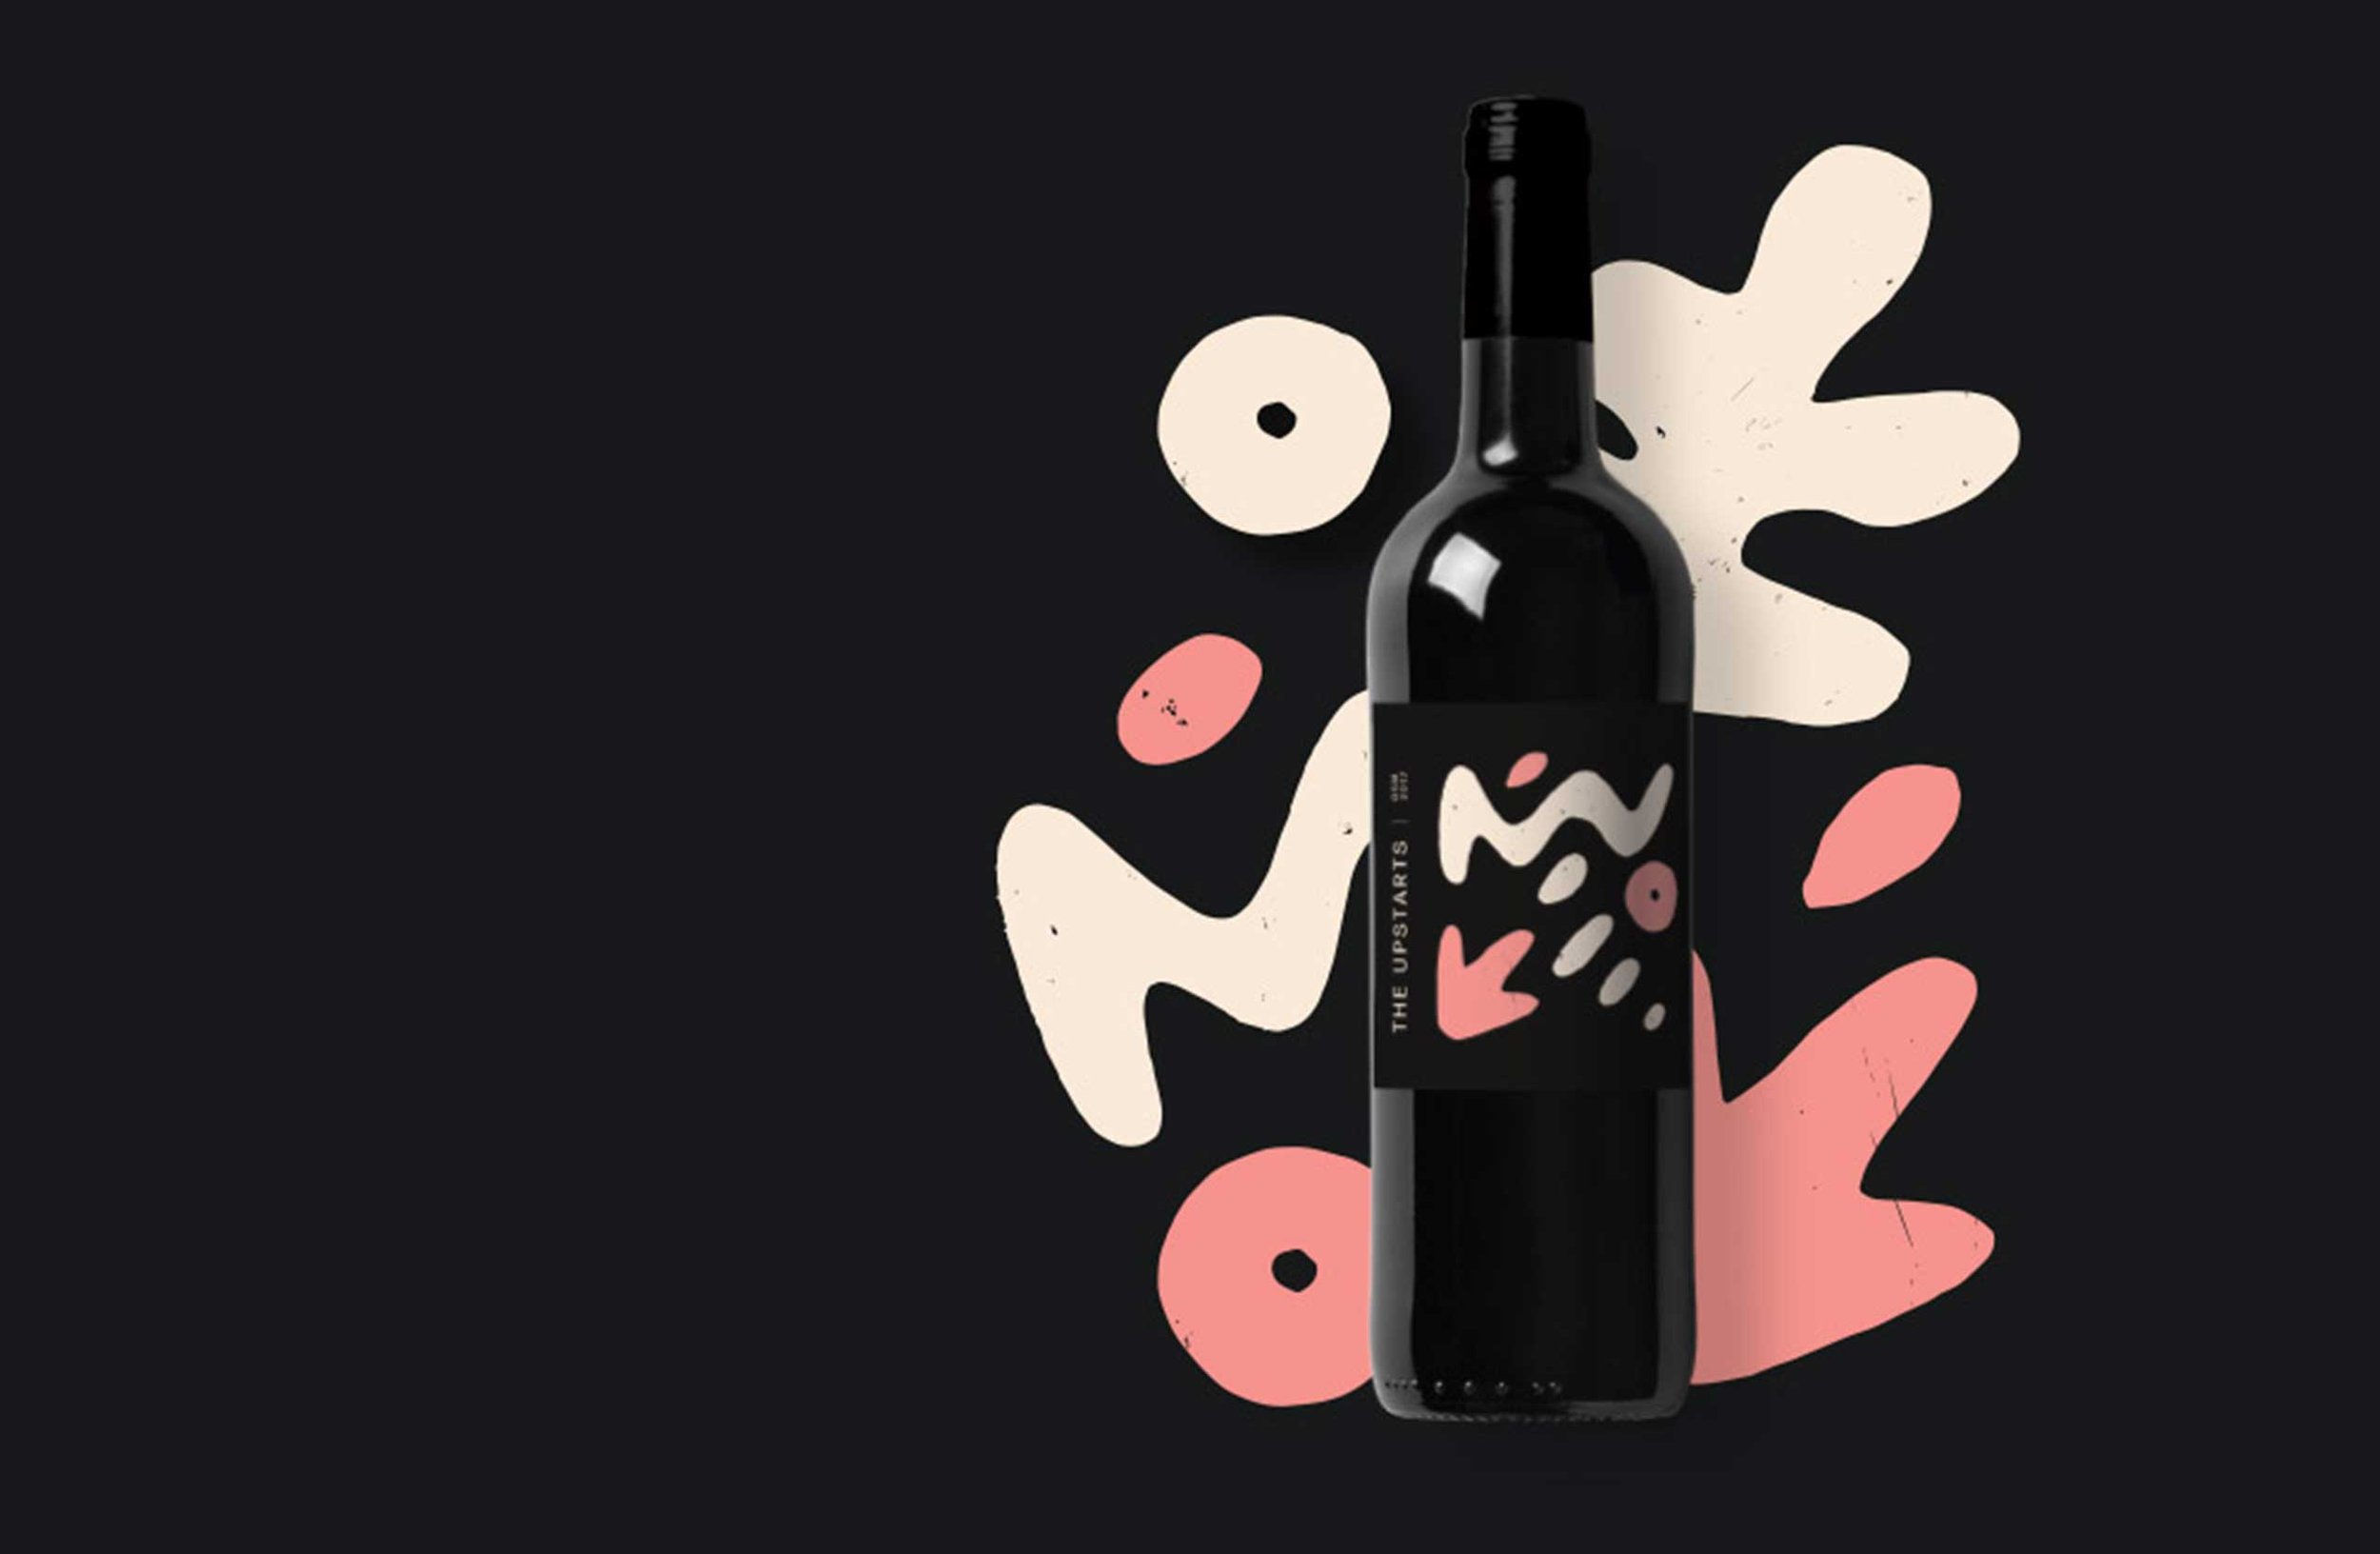 Made_by_mustard_design_studio_sydney_byron_bay_australia_brand_identity_upsatrs_wine.jpg